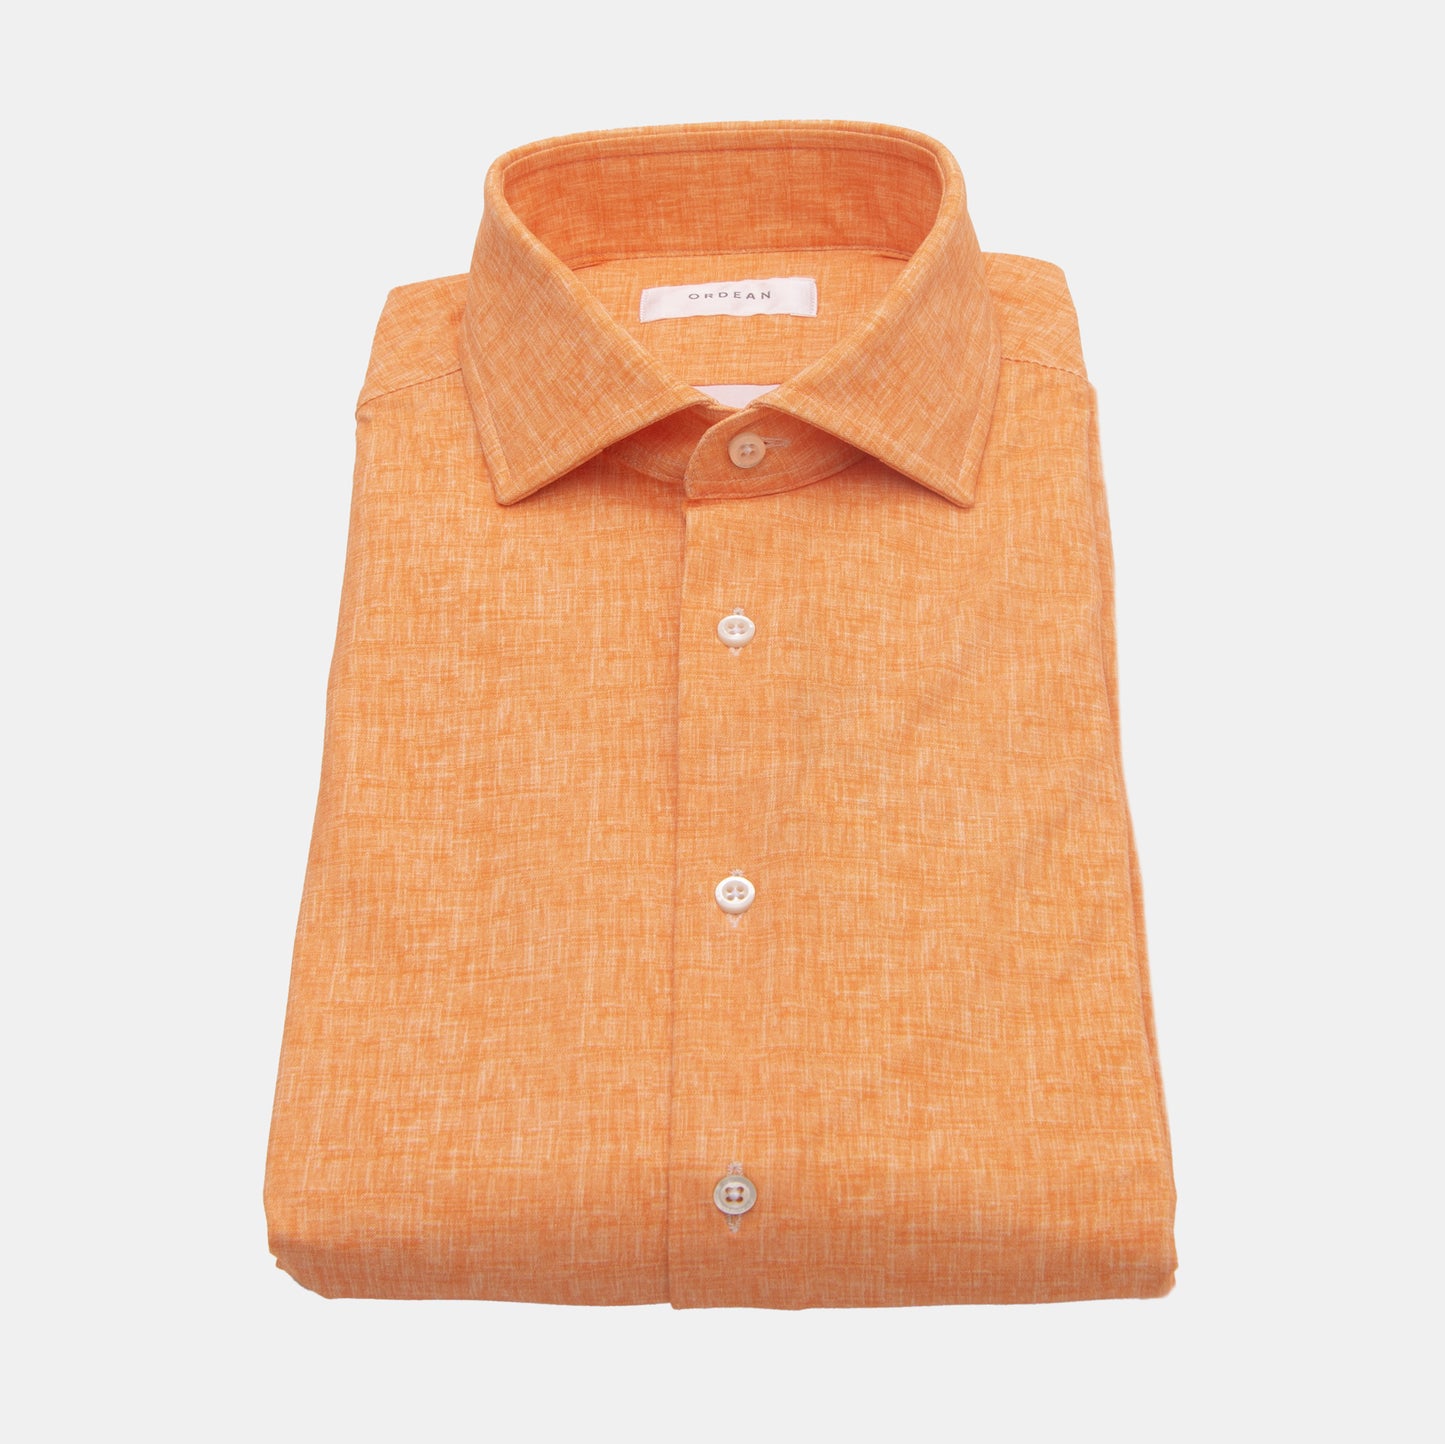 Khaki’s of Carmel - Orange Shirt